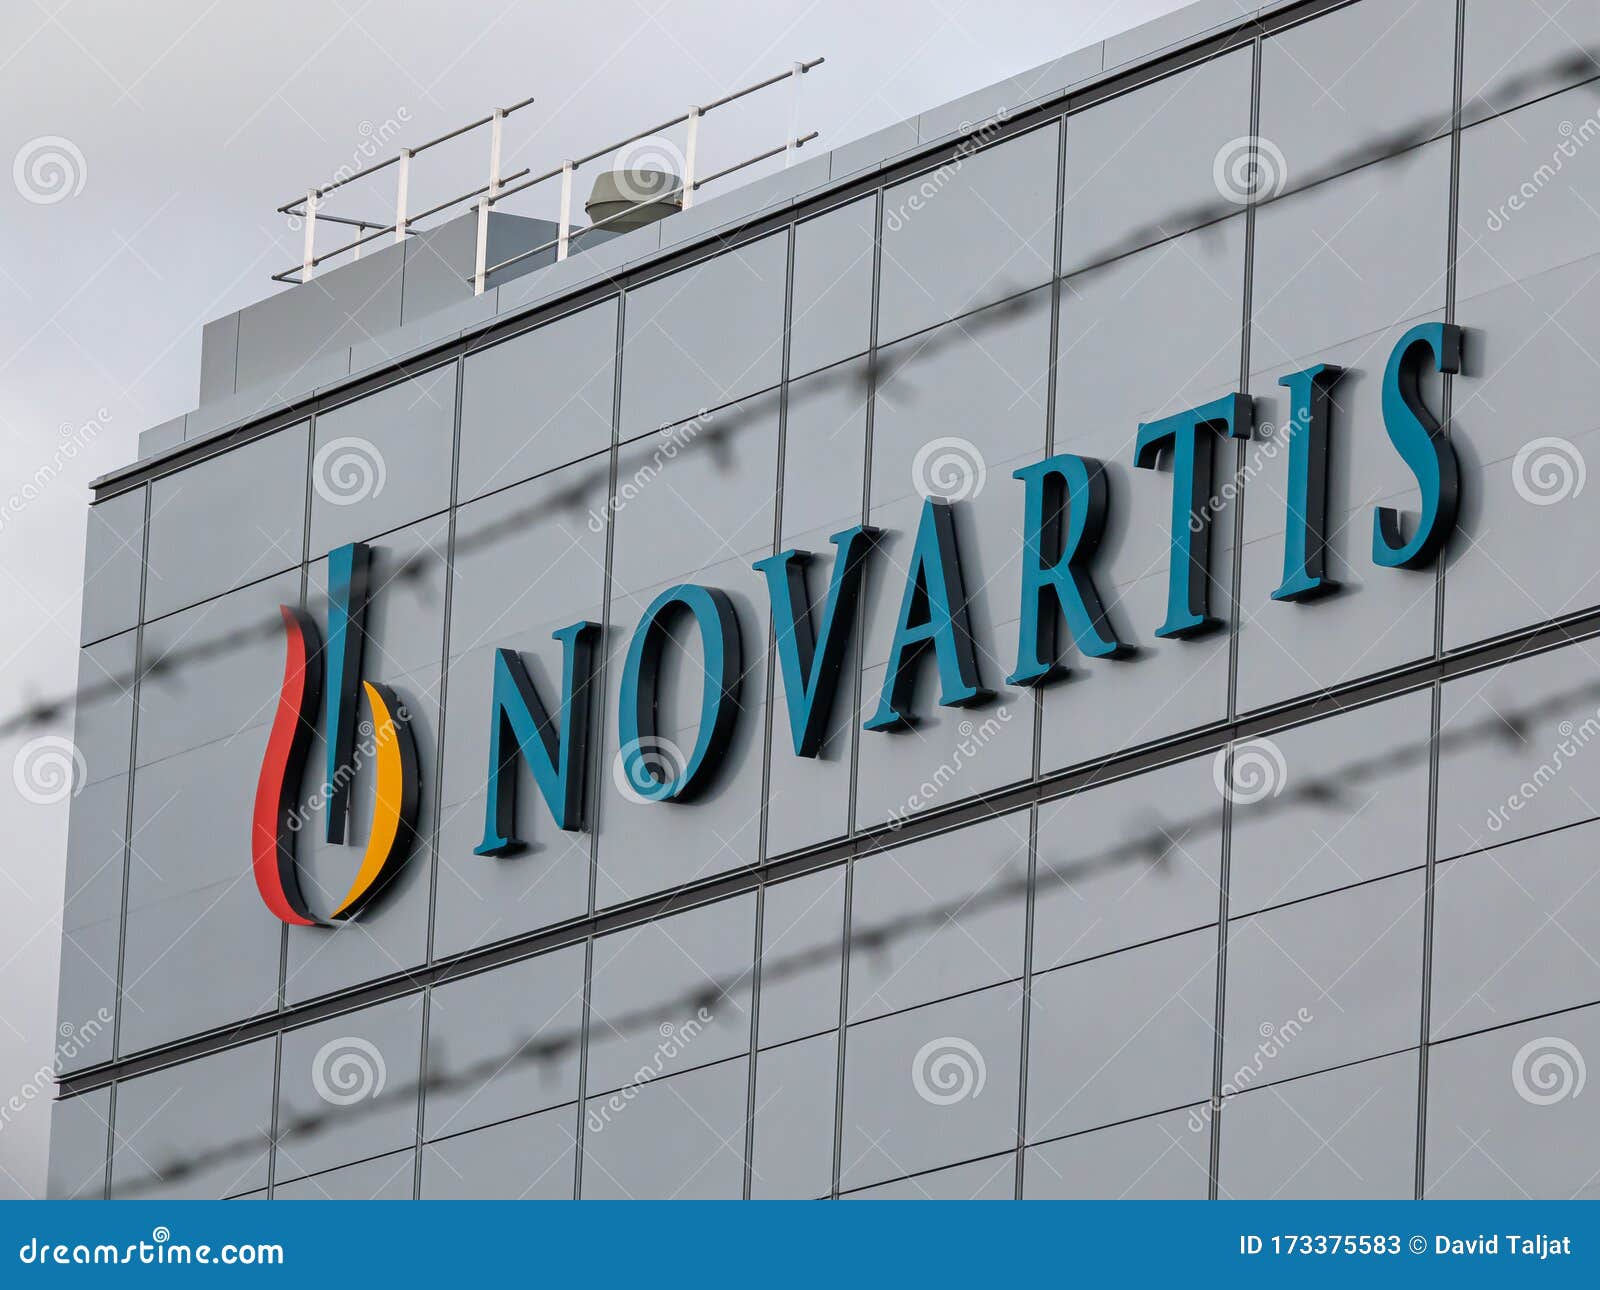 138 Novartis Στοκ Φωτογραφίες - Δωρεάν και δωρεάν Στοκ ...